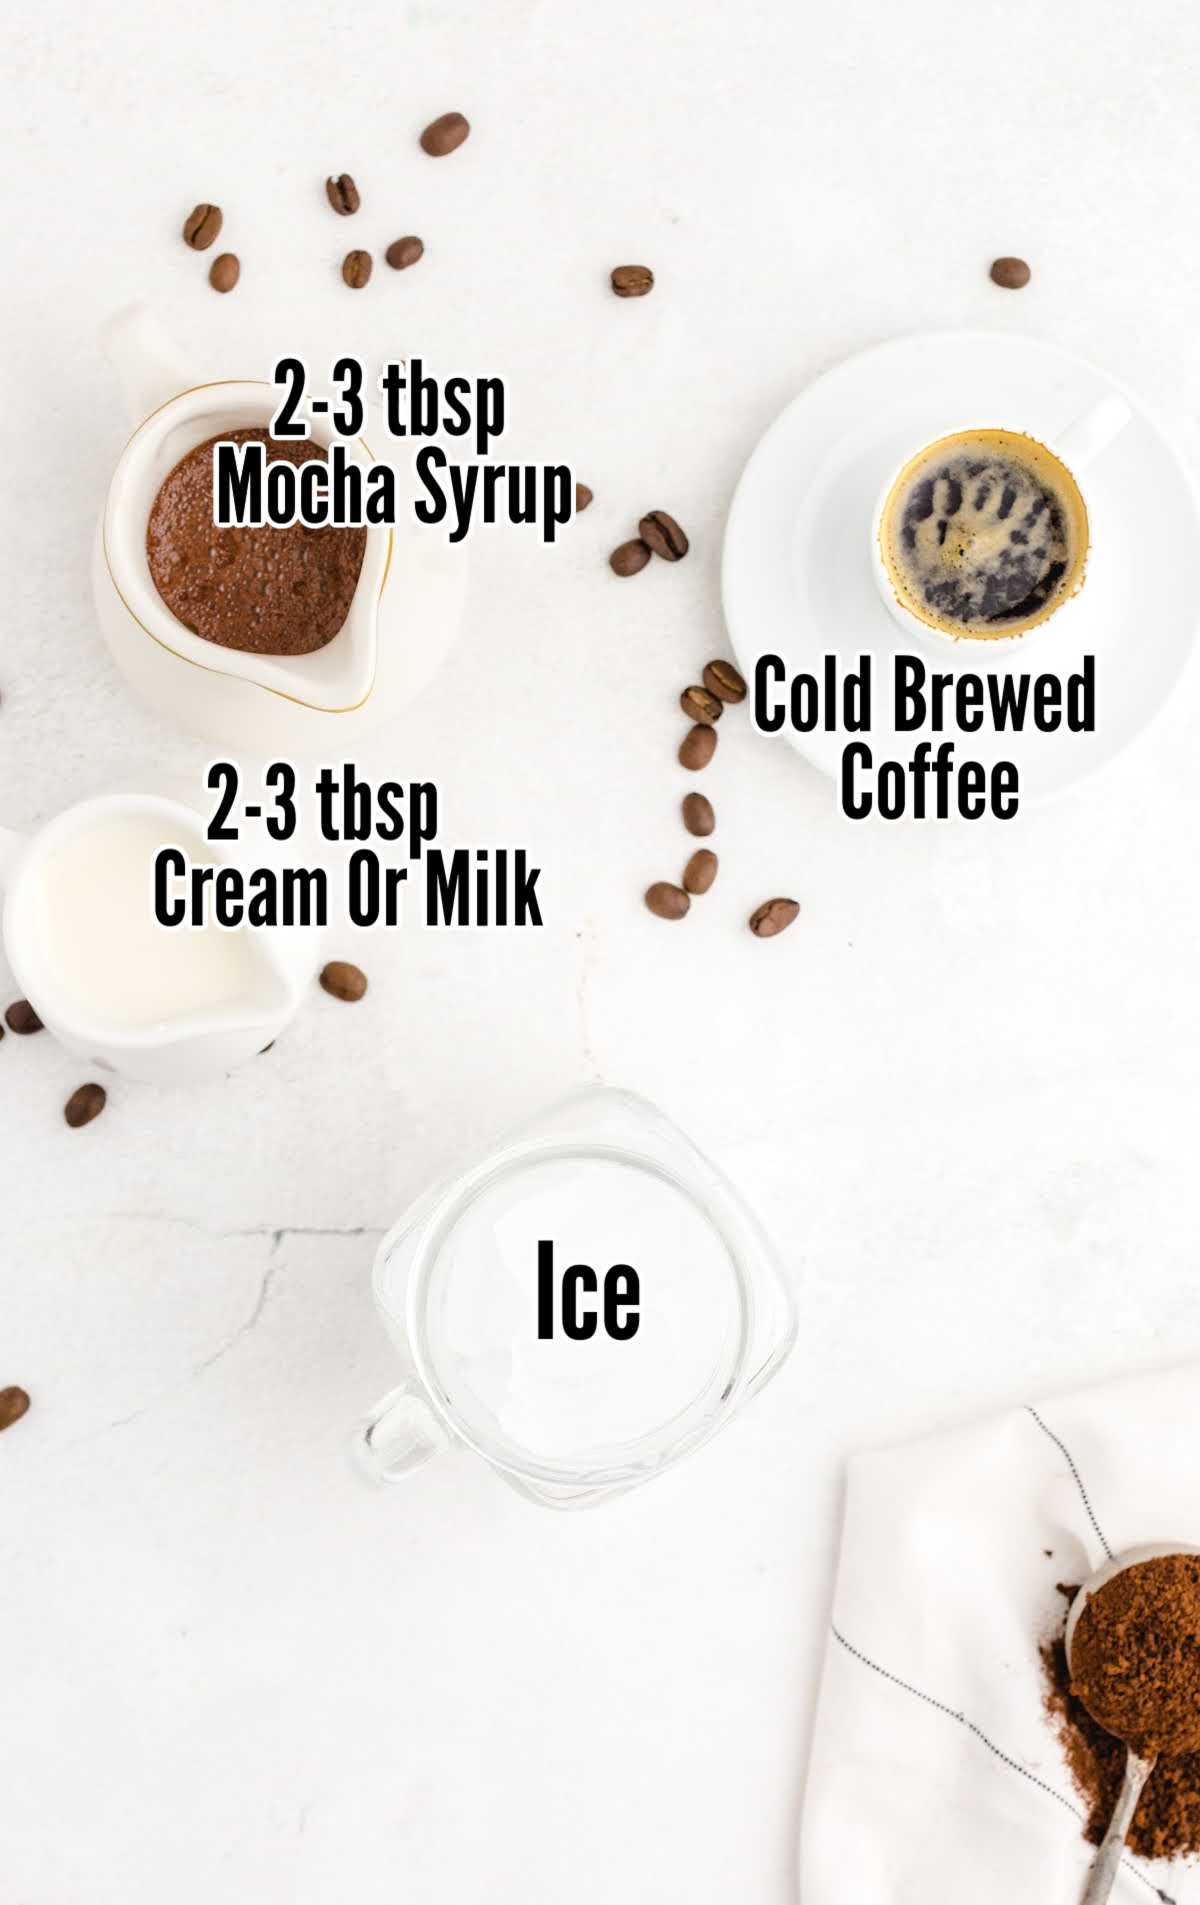 Coffee and Iced mocha